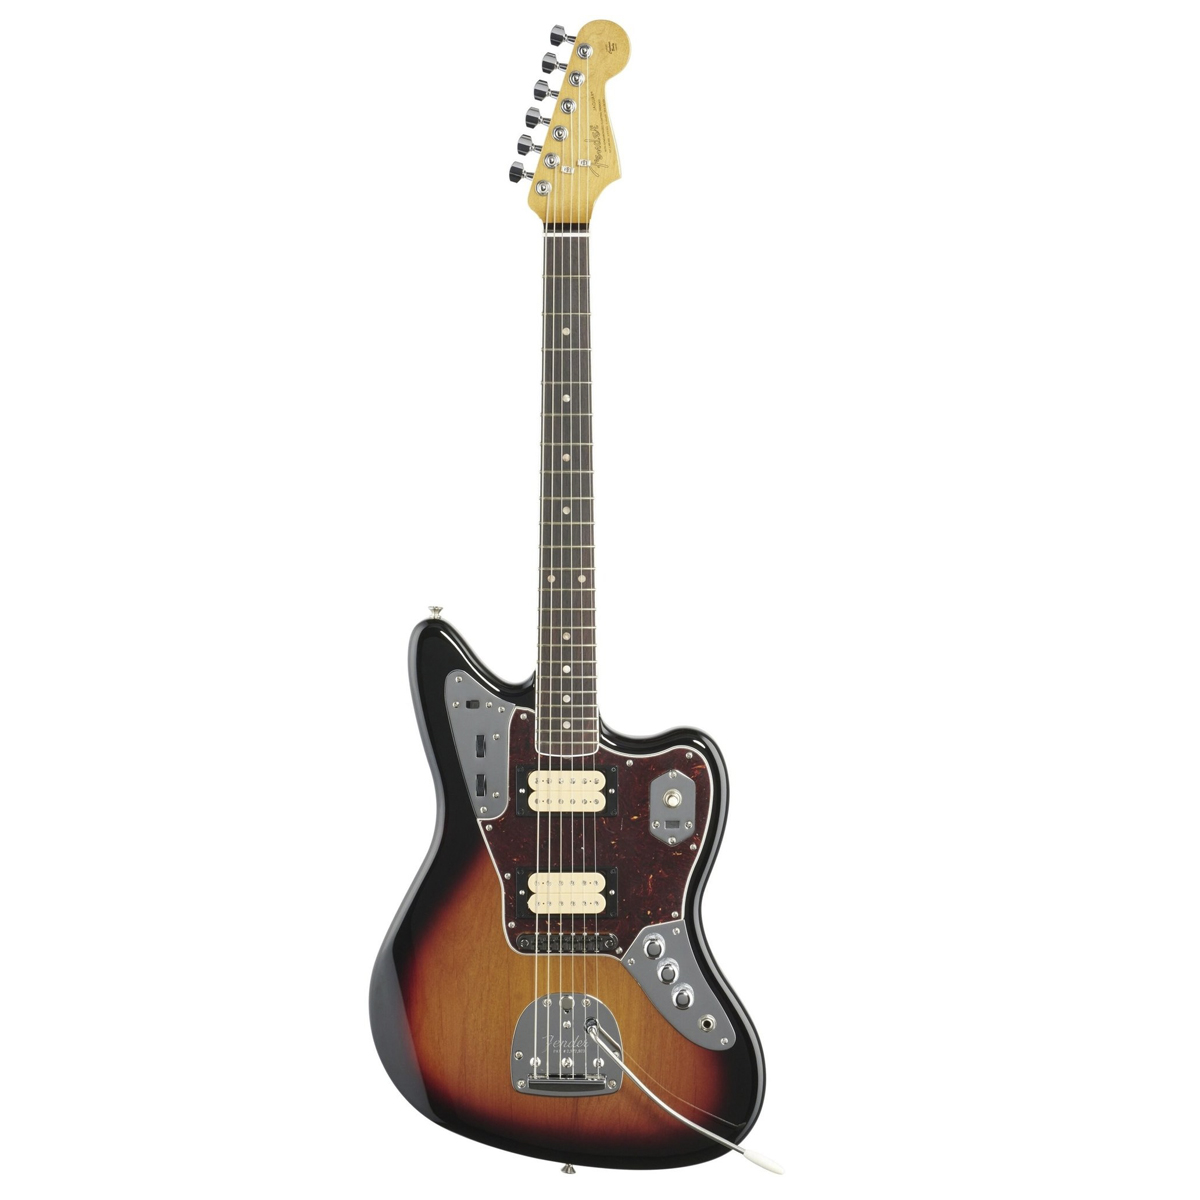 Электрогитара Fender Kurt Cobain Jaguar MX22125625, коричневый набор курт кобейн и nirvana шоколад кэт 12 как дожить до пенсии 60г